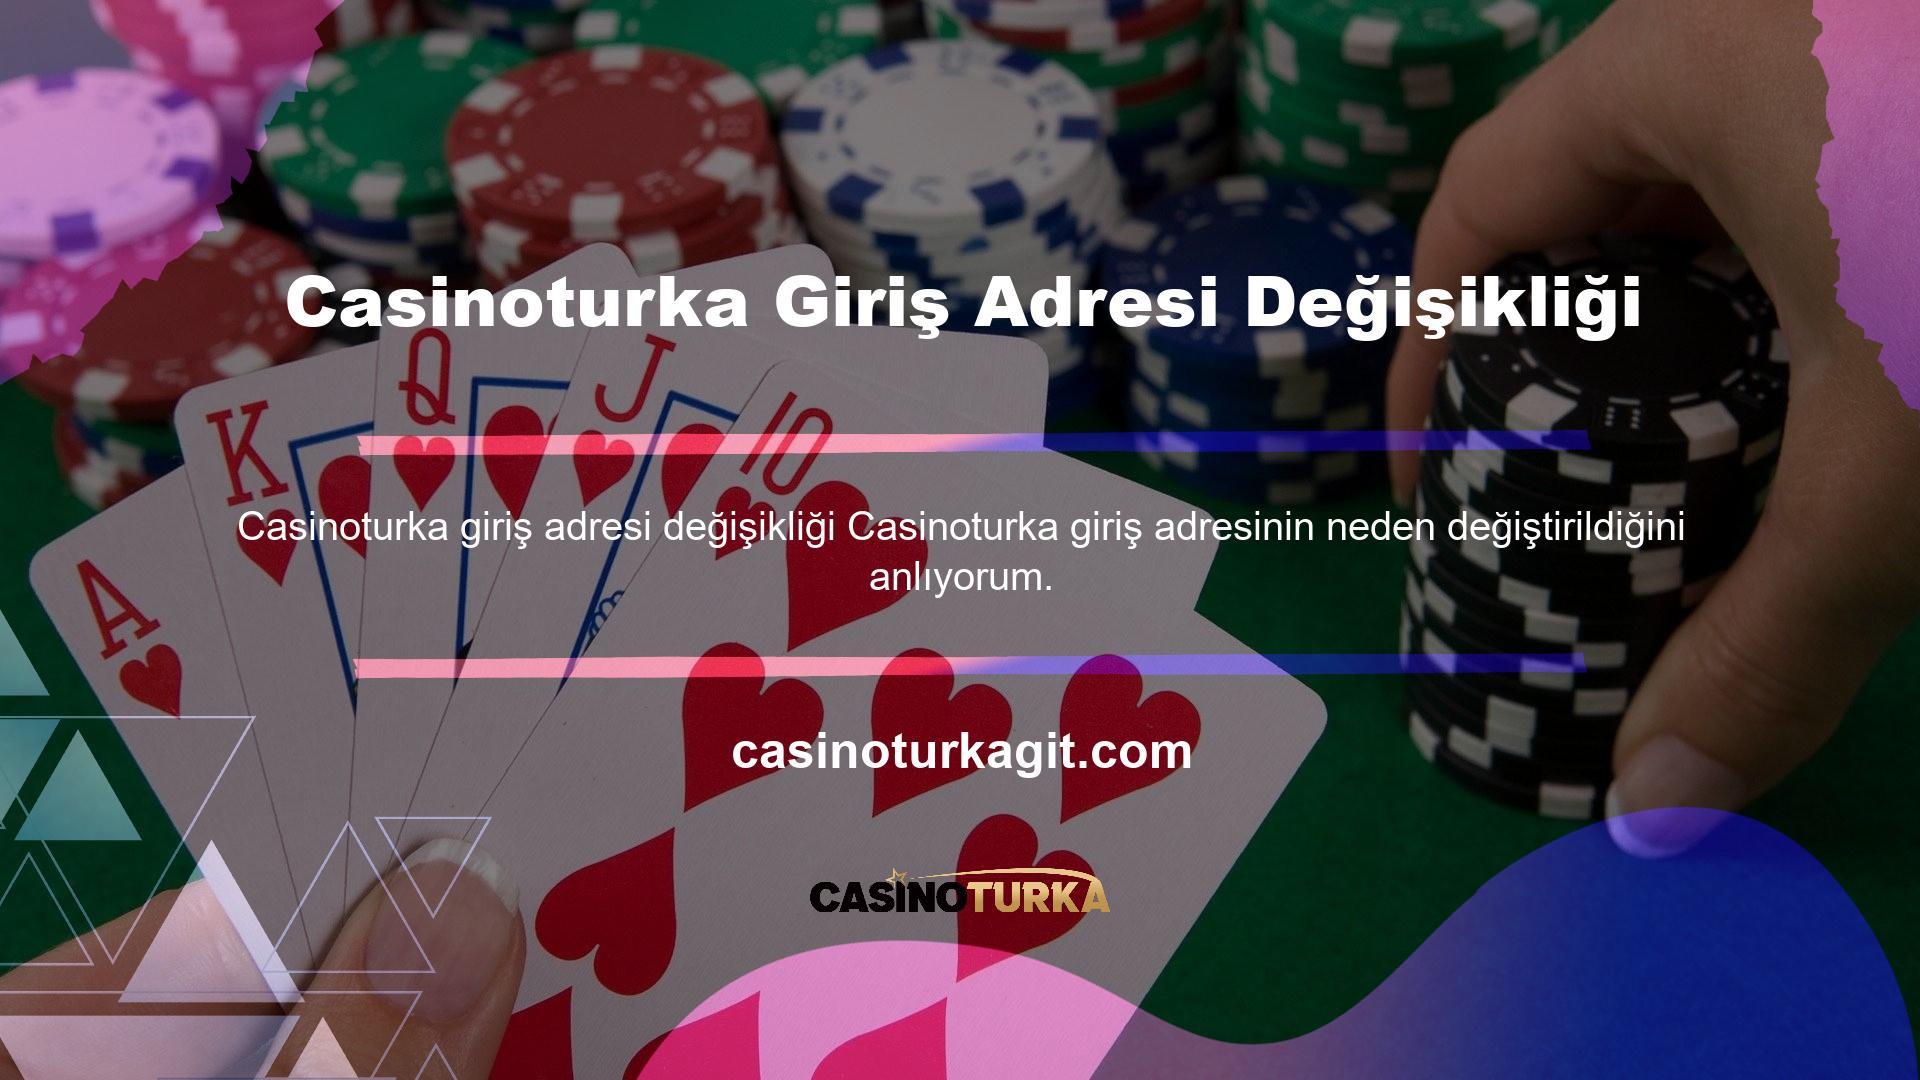 Türk casino sektöründe bazıları iyi bilinen, bazıları ise hiç bilinmeyen binlerce casino sitesi bulunmaktadır